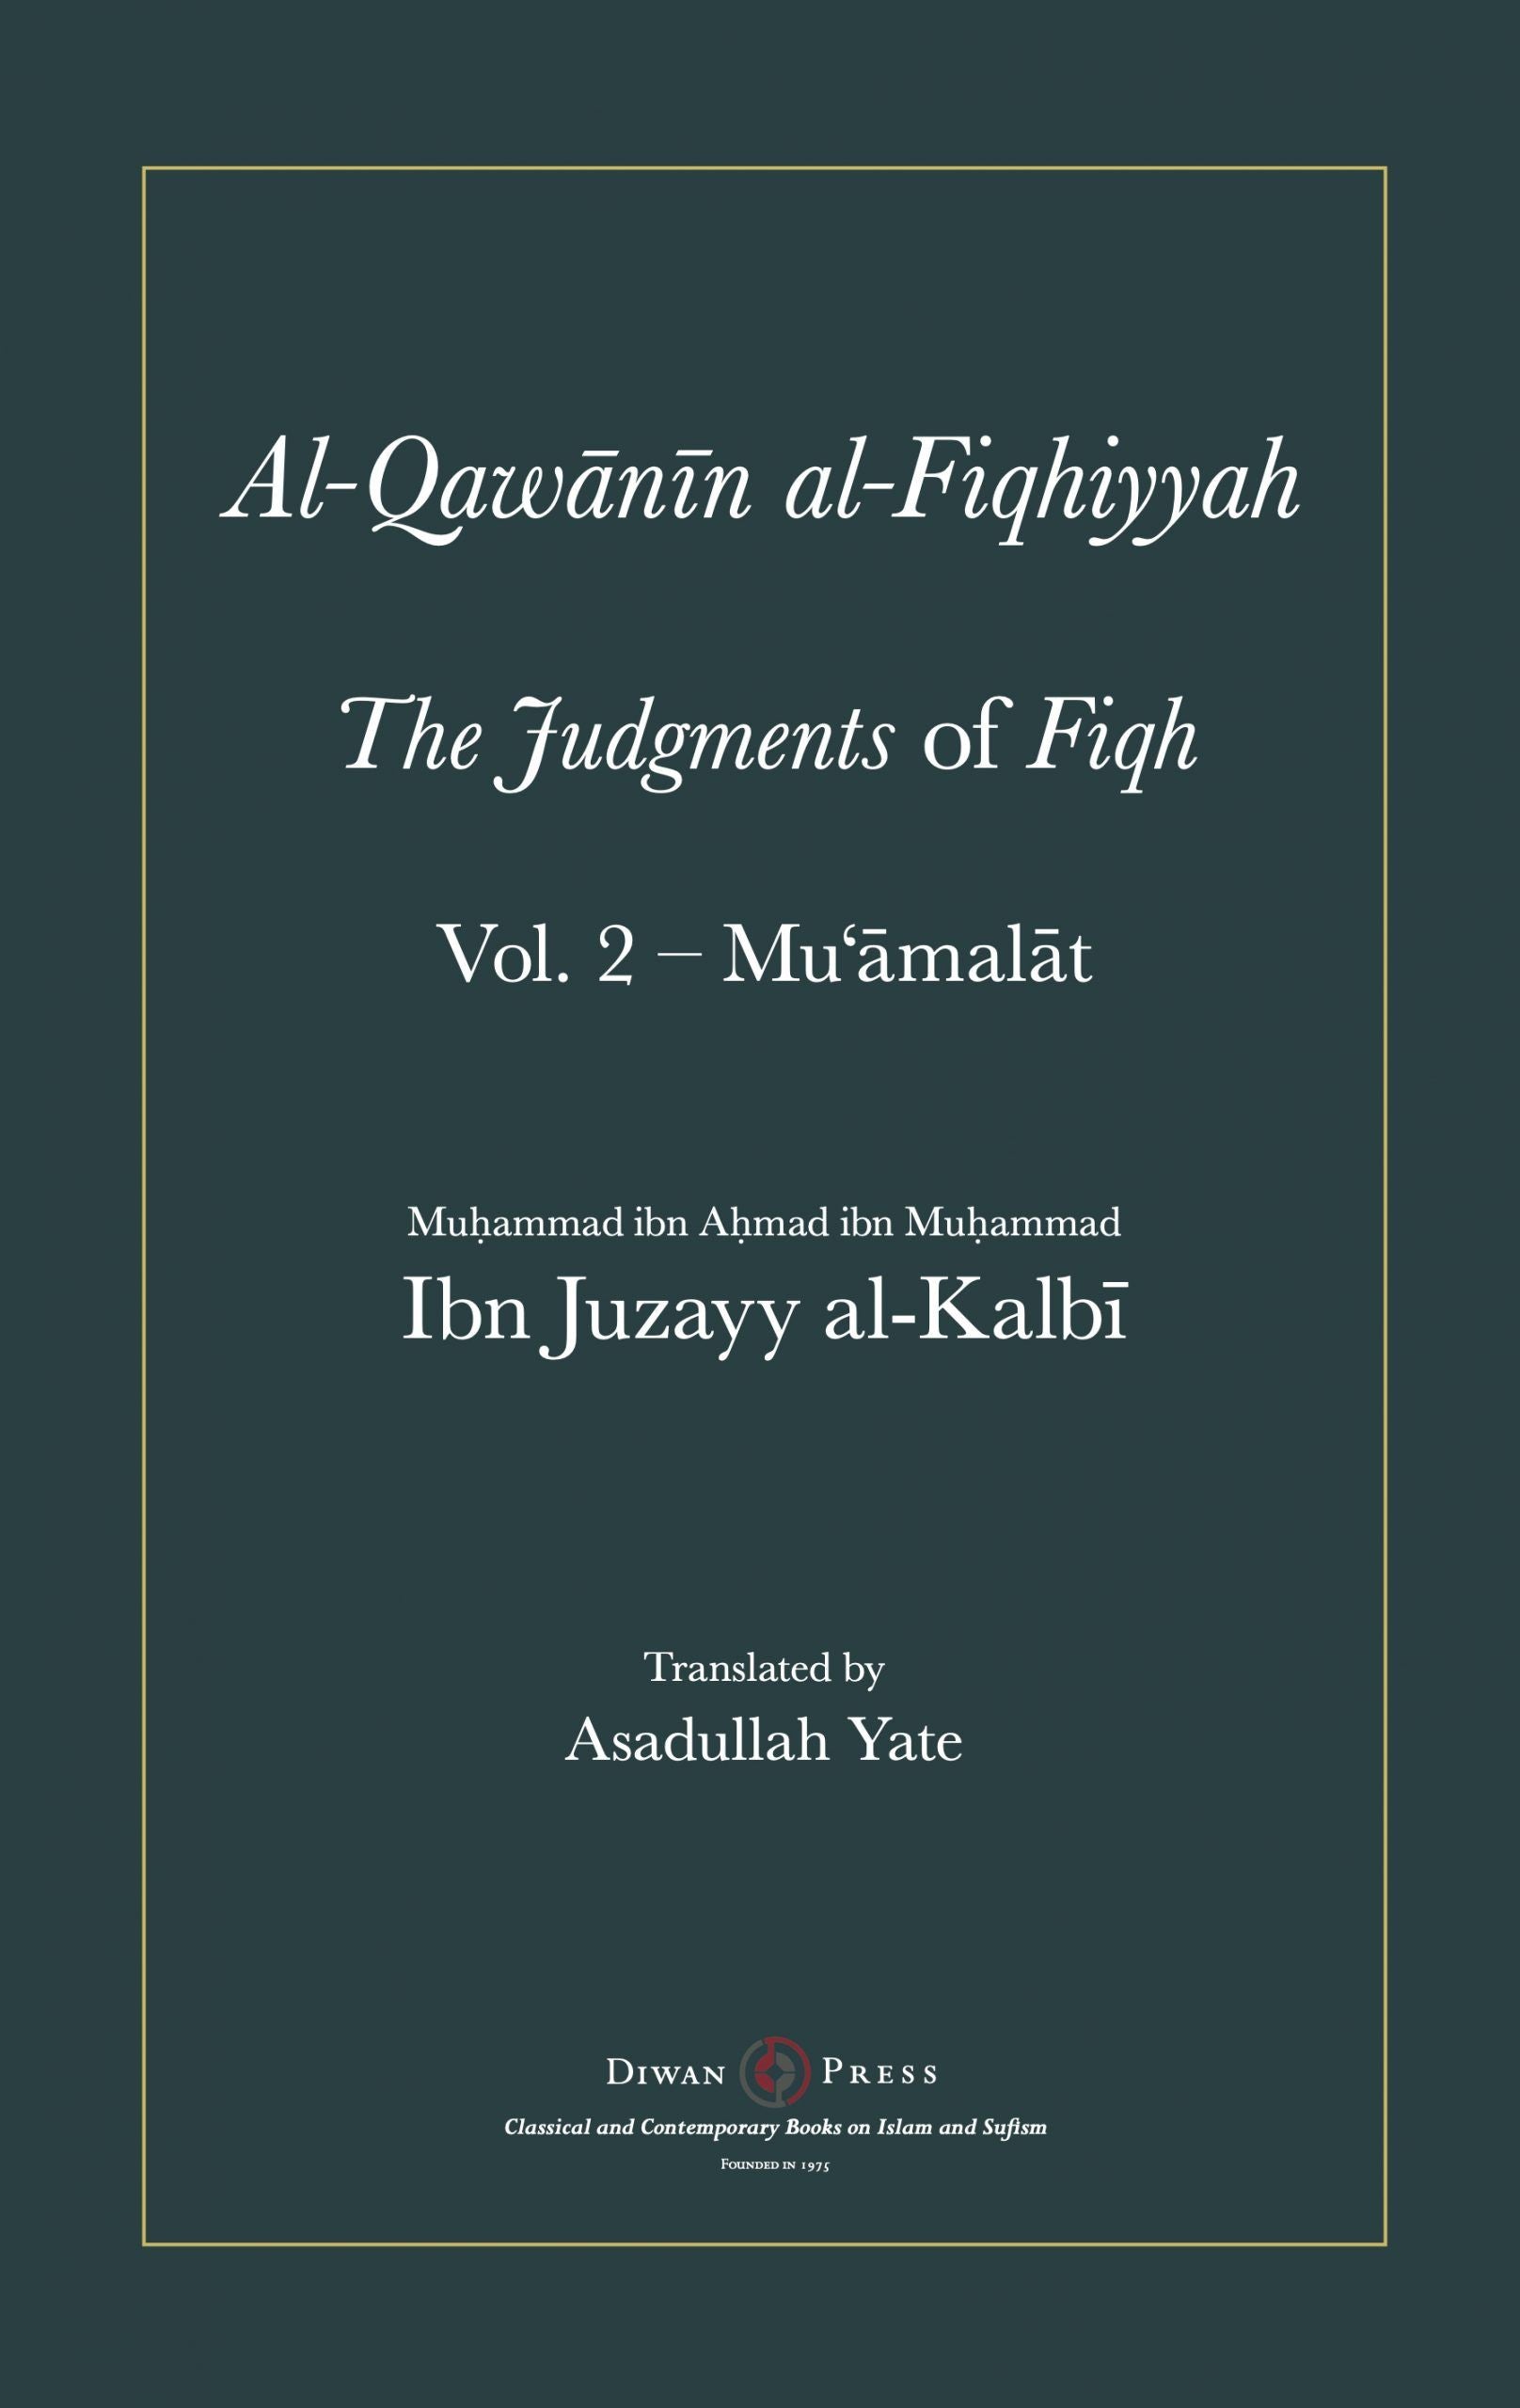 Al-Qawanin al-Fiqhiyyah: The Judgements of Fiqh - Vol. 2 (Mu'amalat & Other Matters)